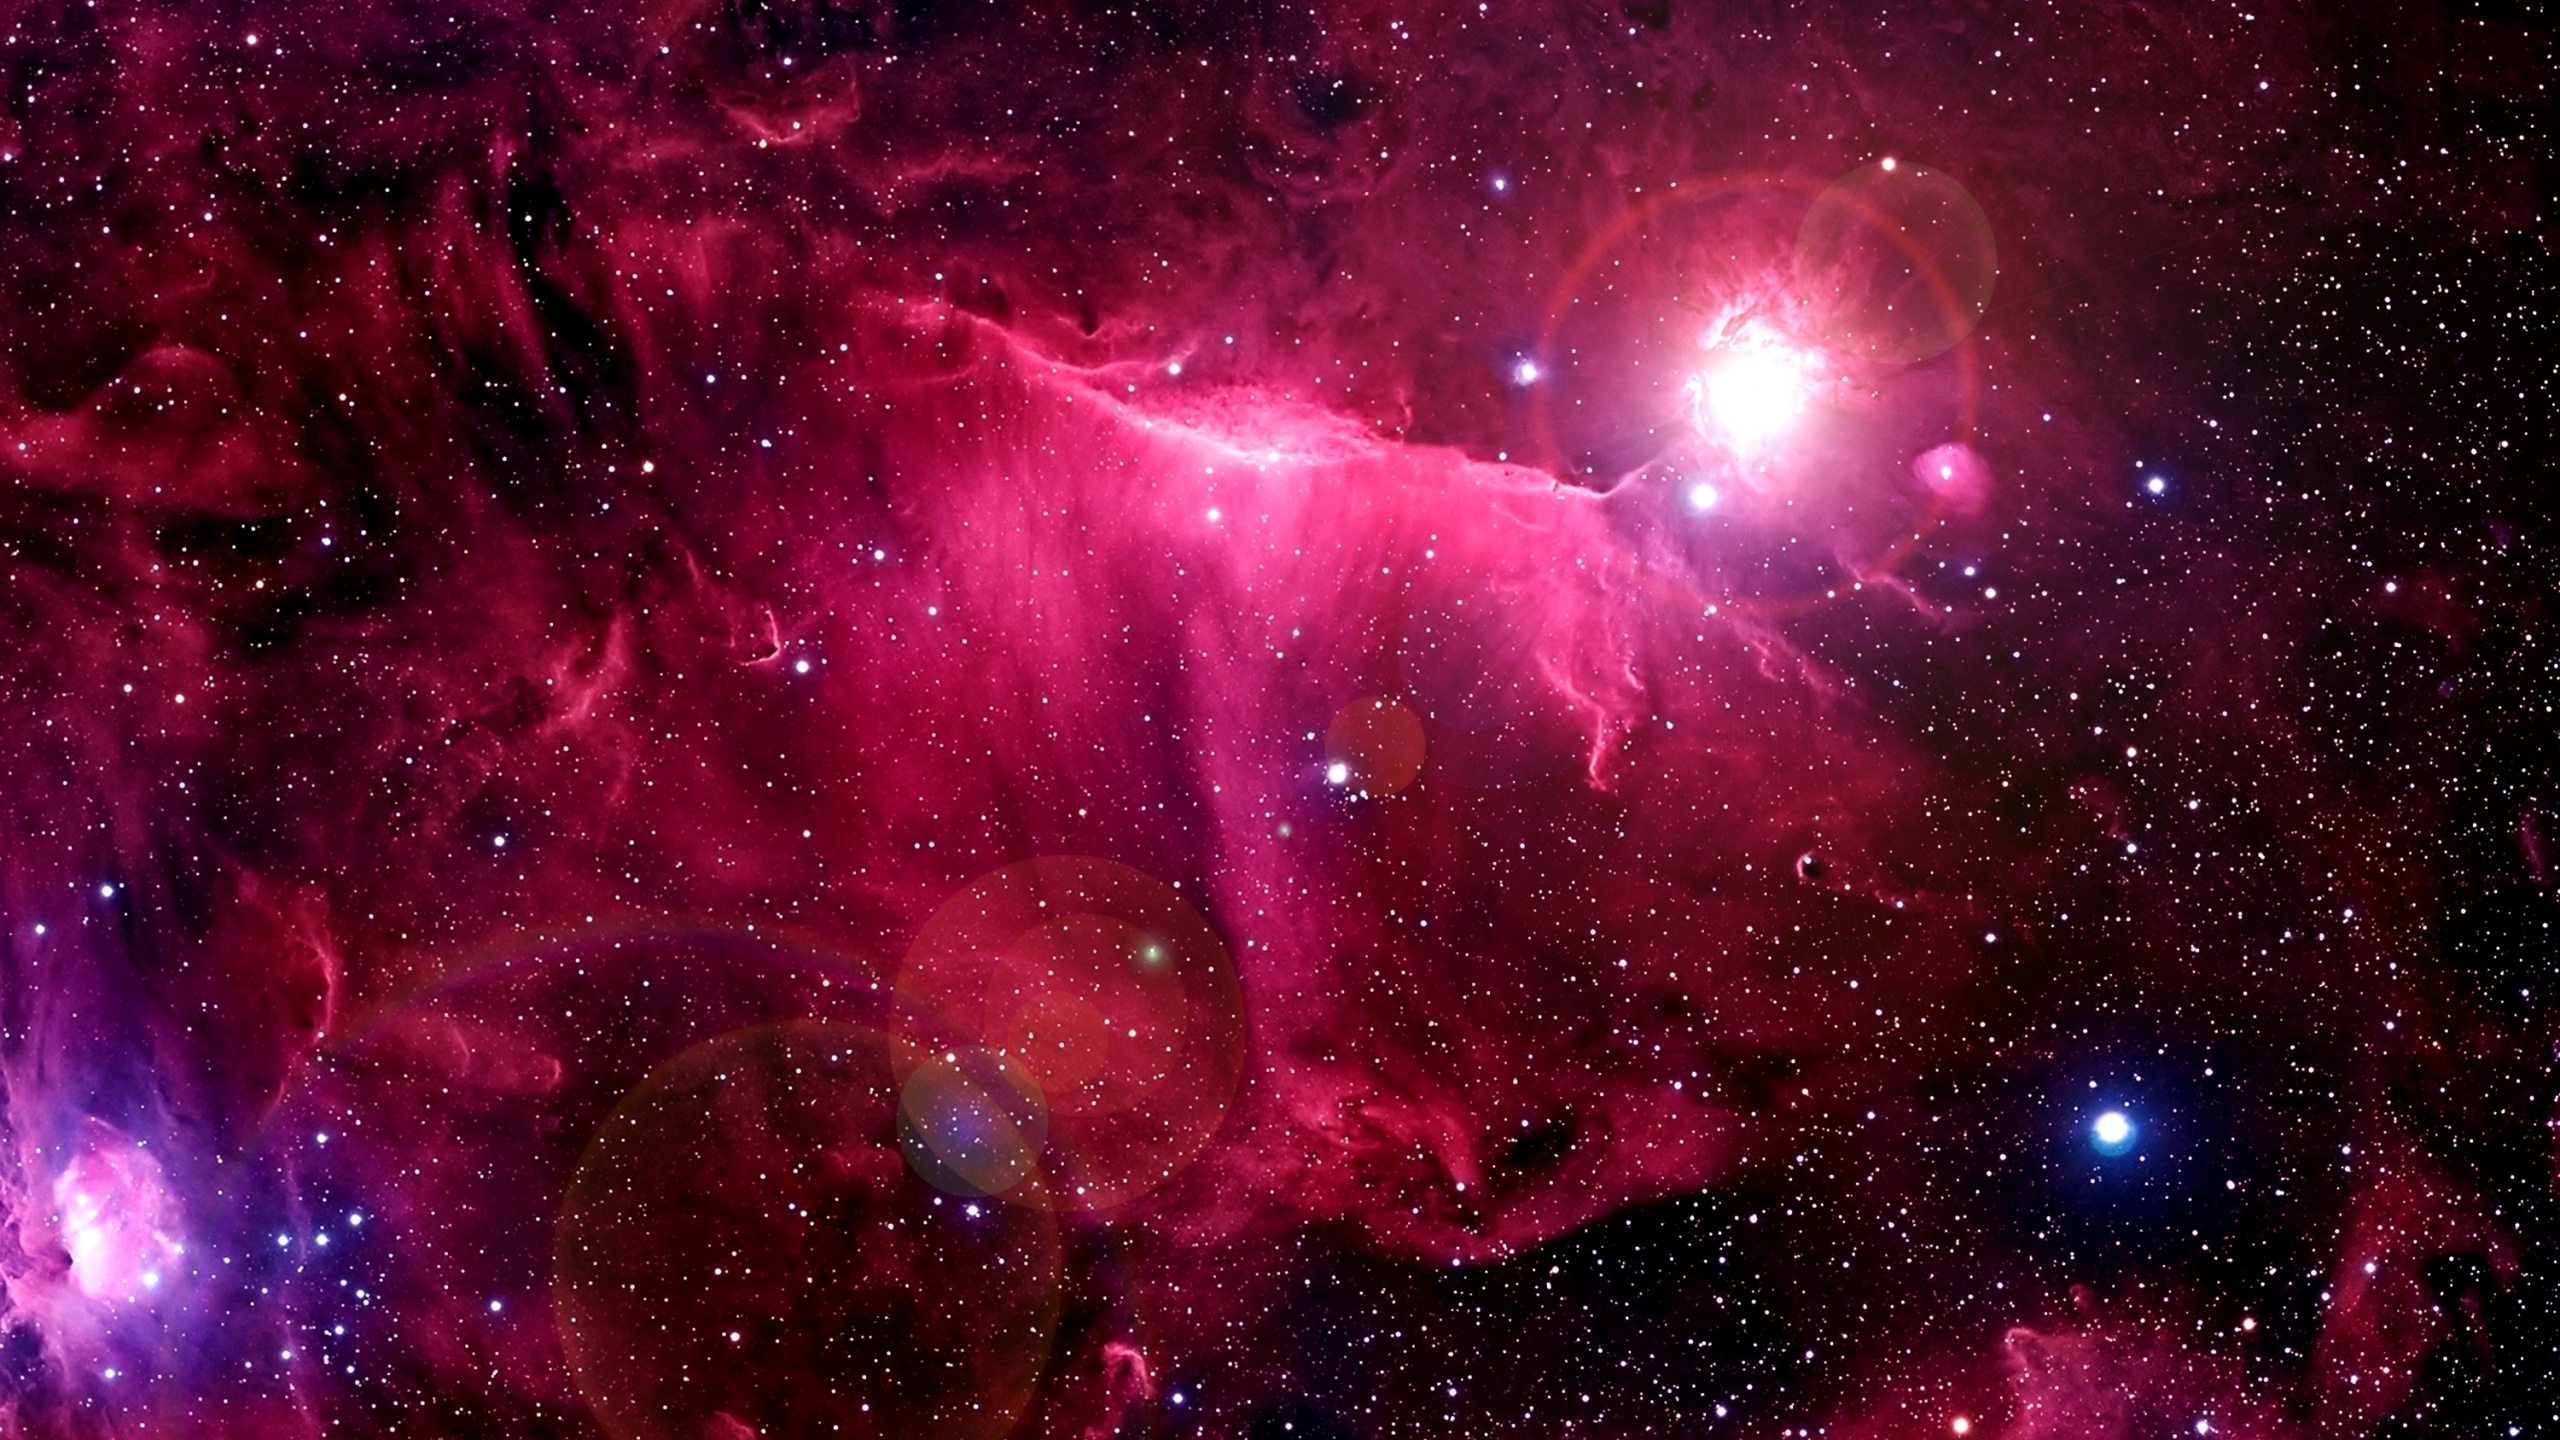 el Espacio Exterior, Objeto Astronómico, Rosa, Morado, Universo. Wallpaper in 2560x1440 Resolution